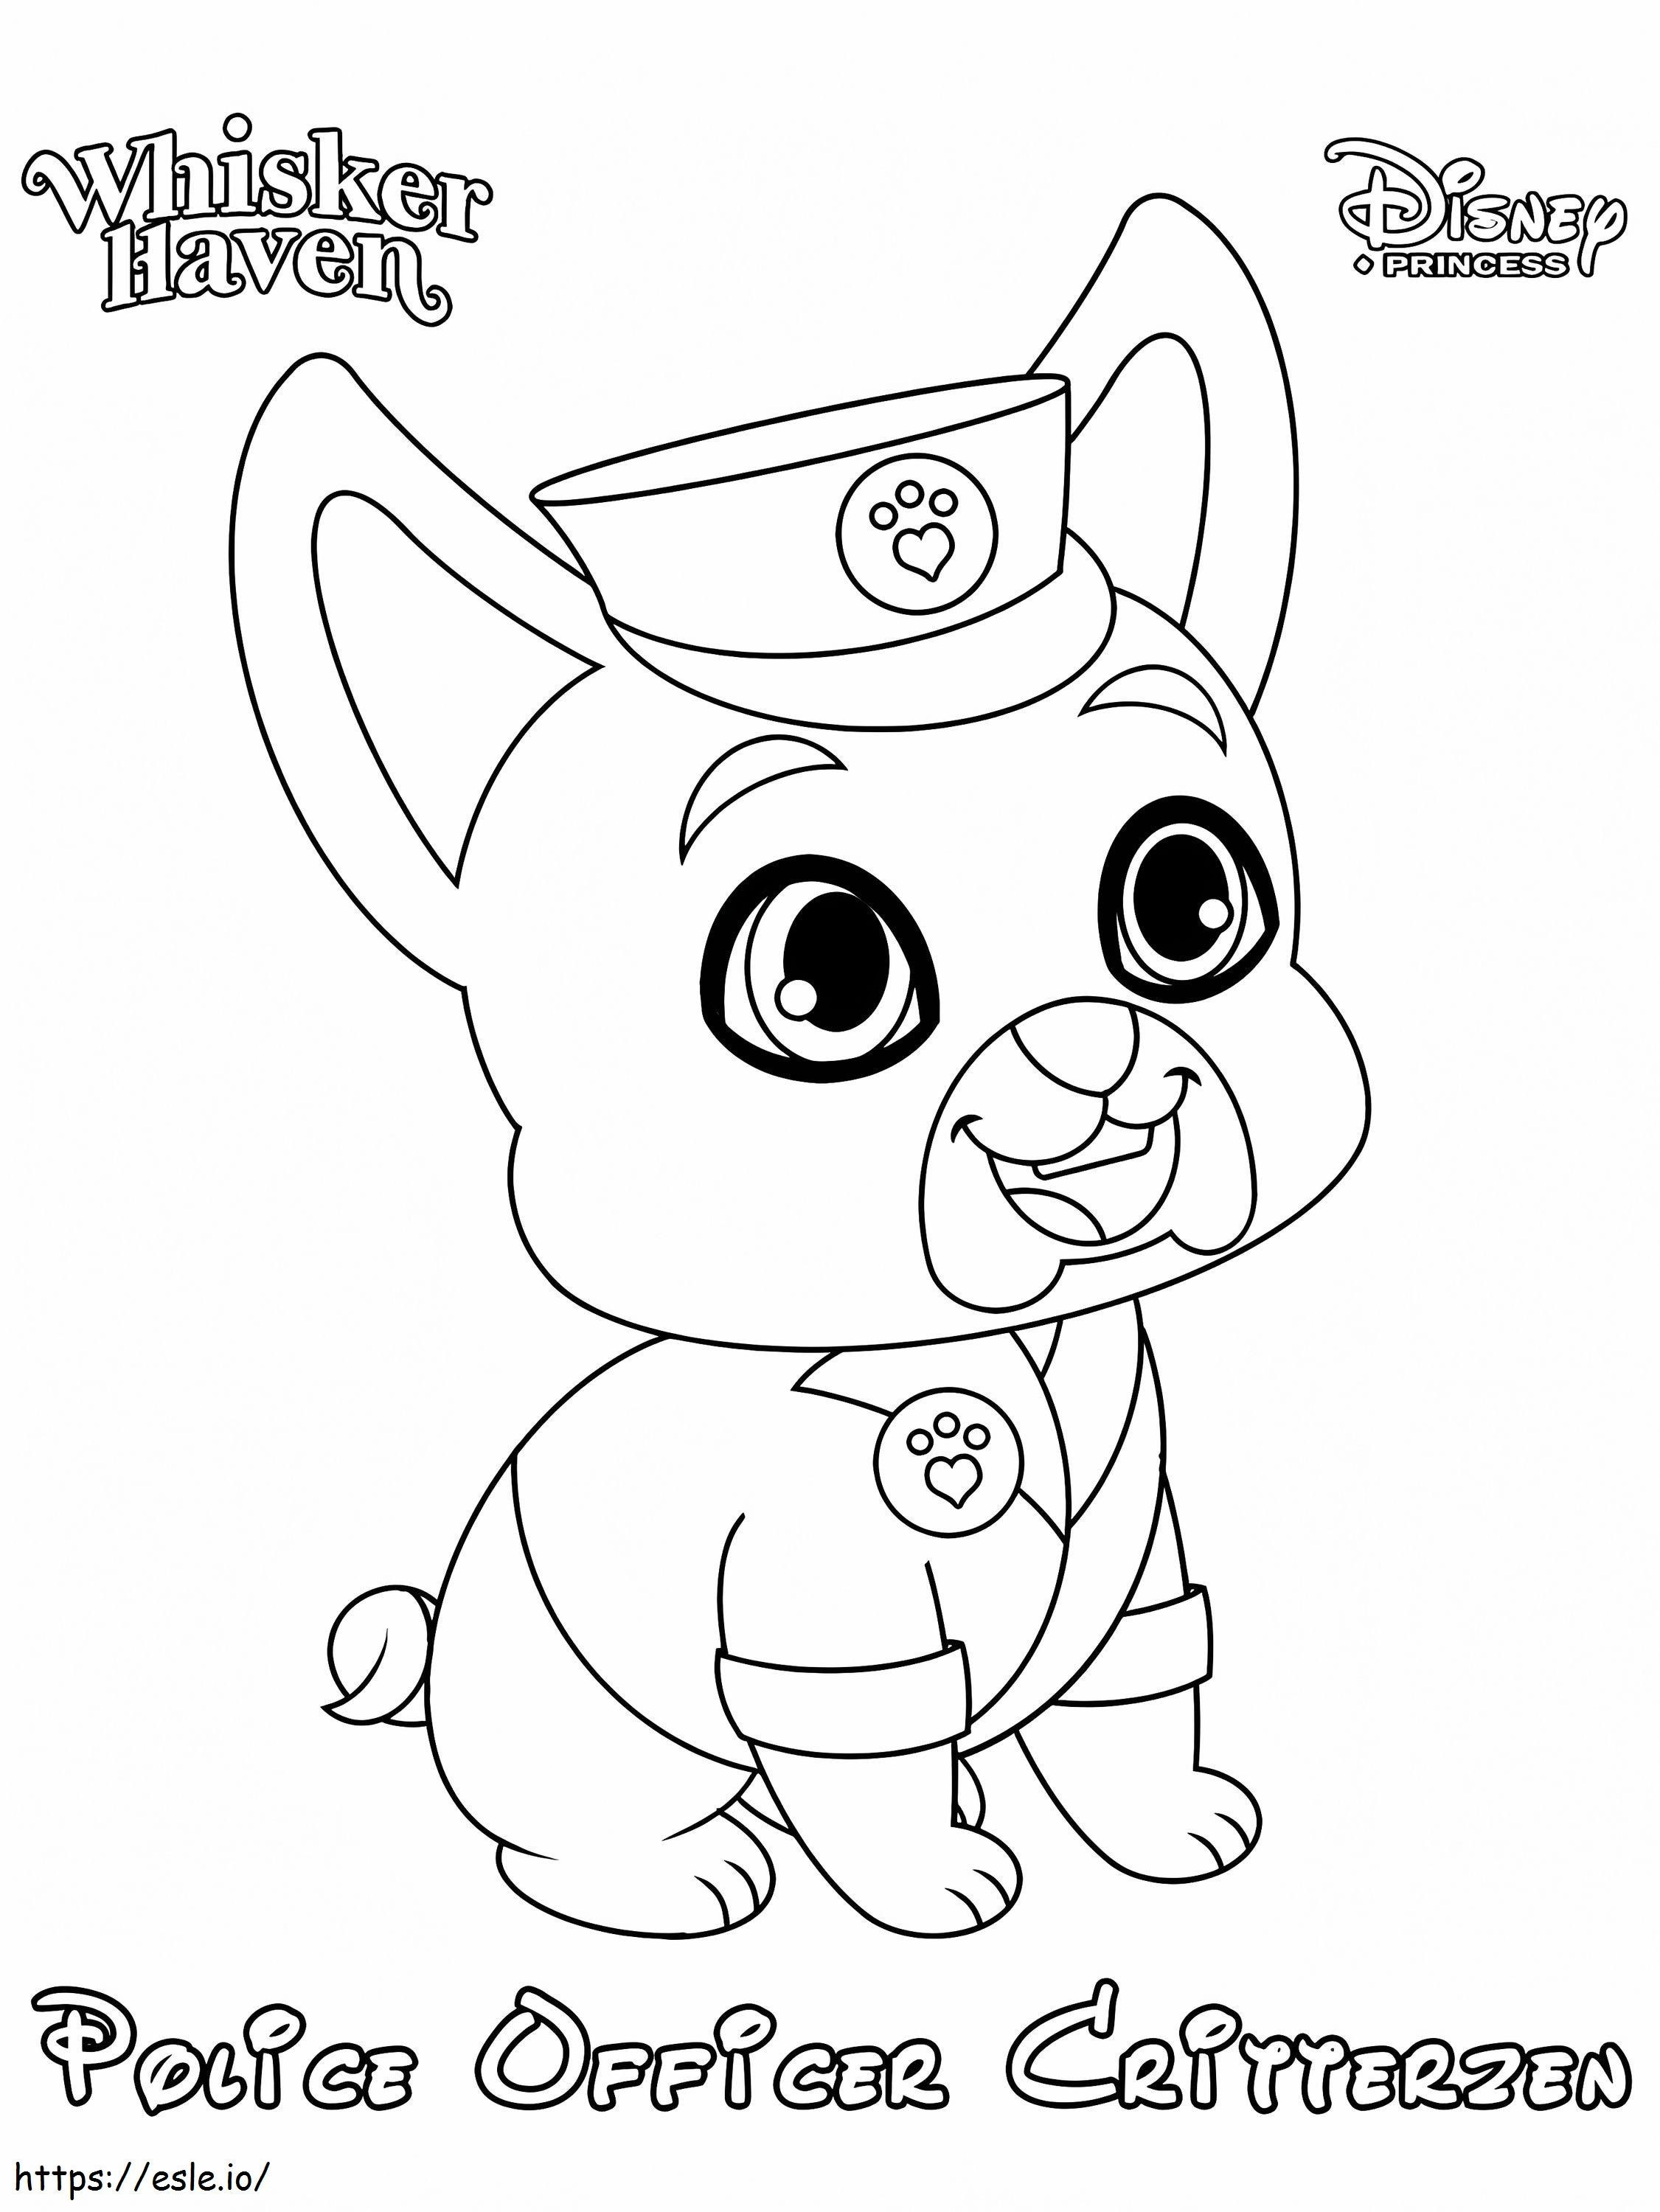 Coloriage  Whisker Haven Officier de police Critterzen Princess Palace Pet à imprimer dessin